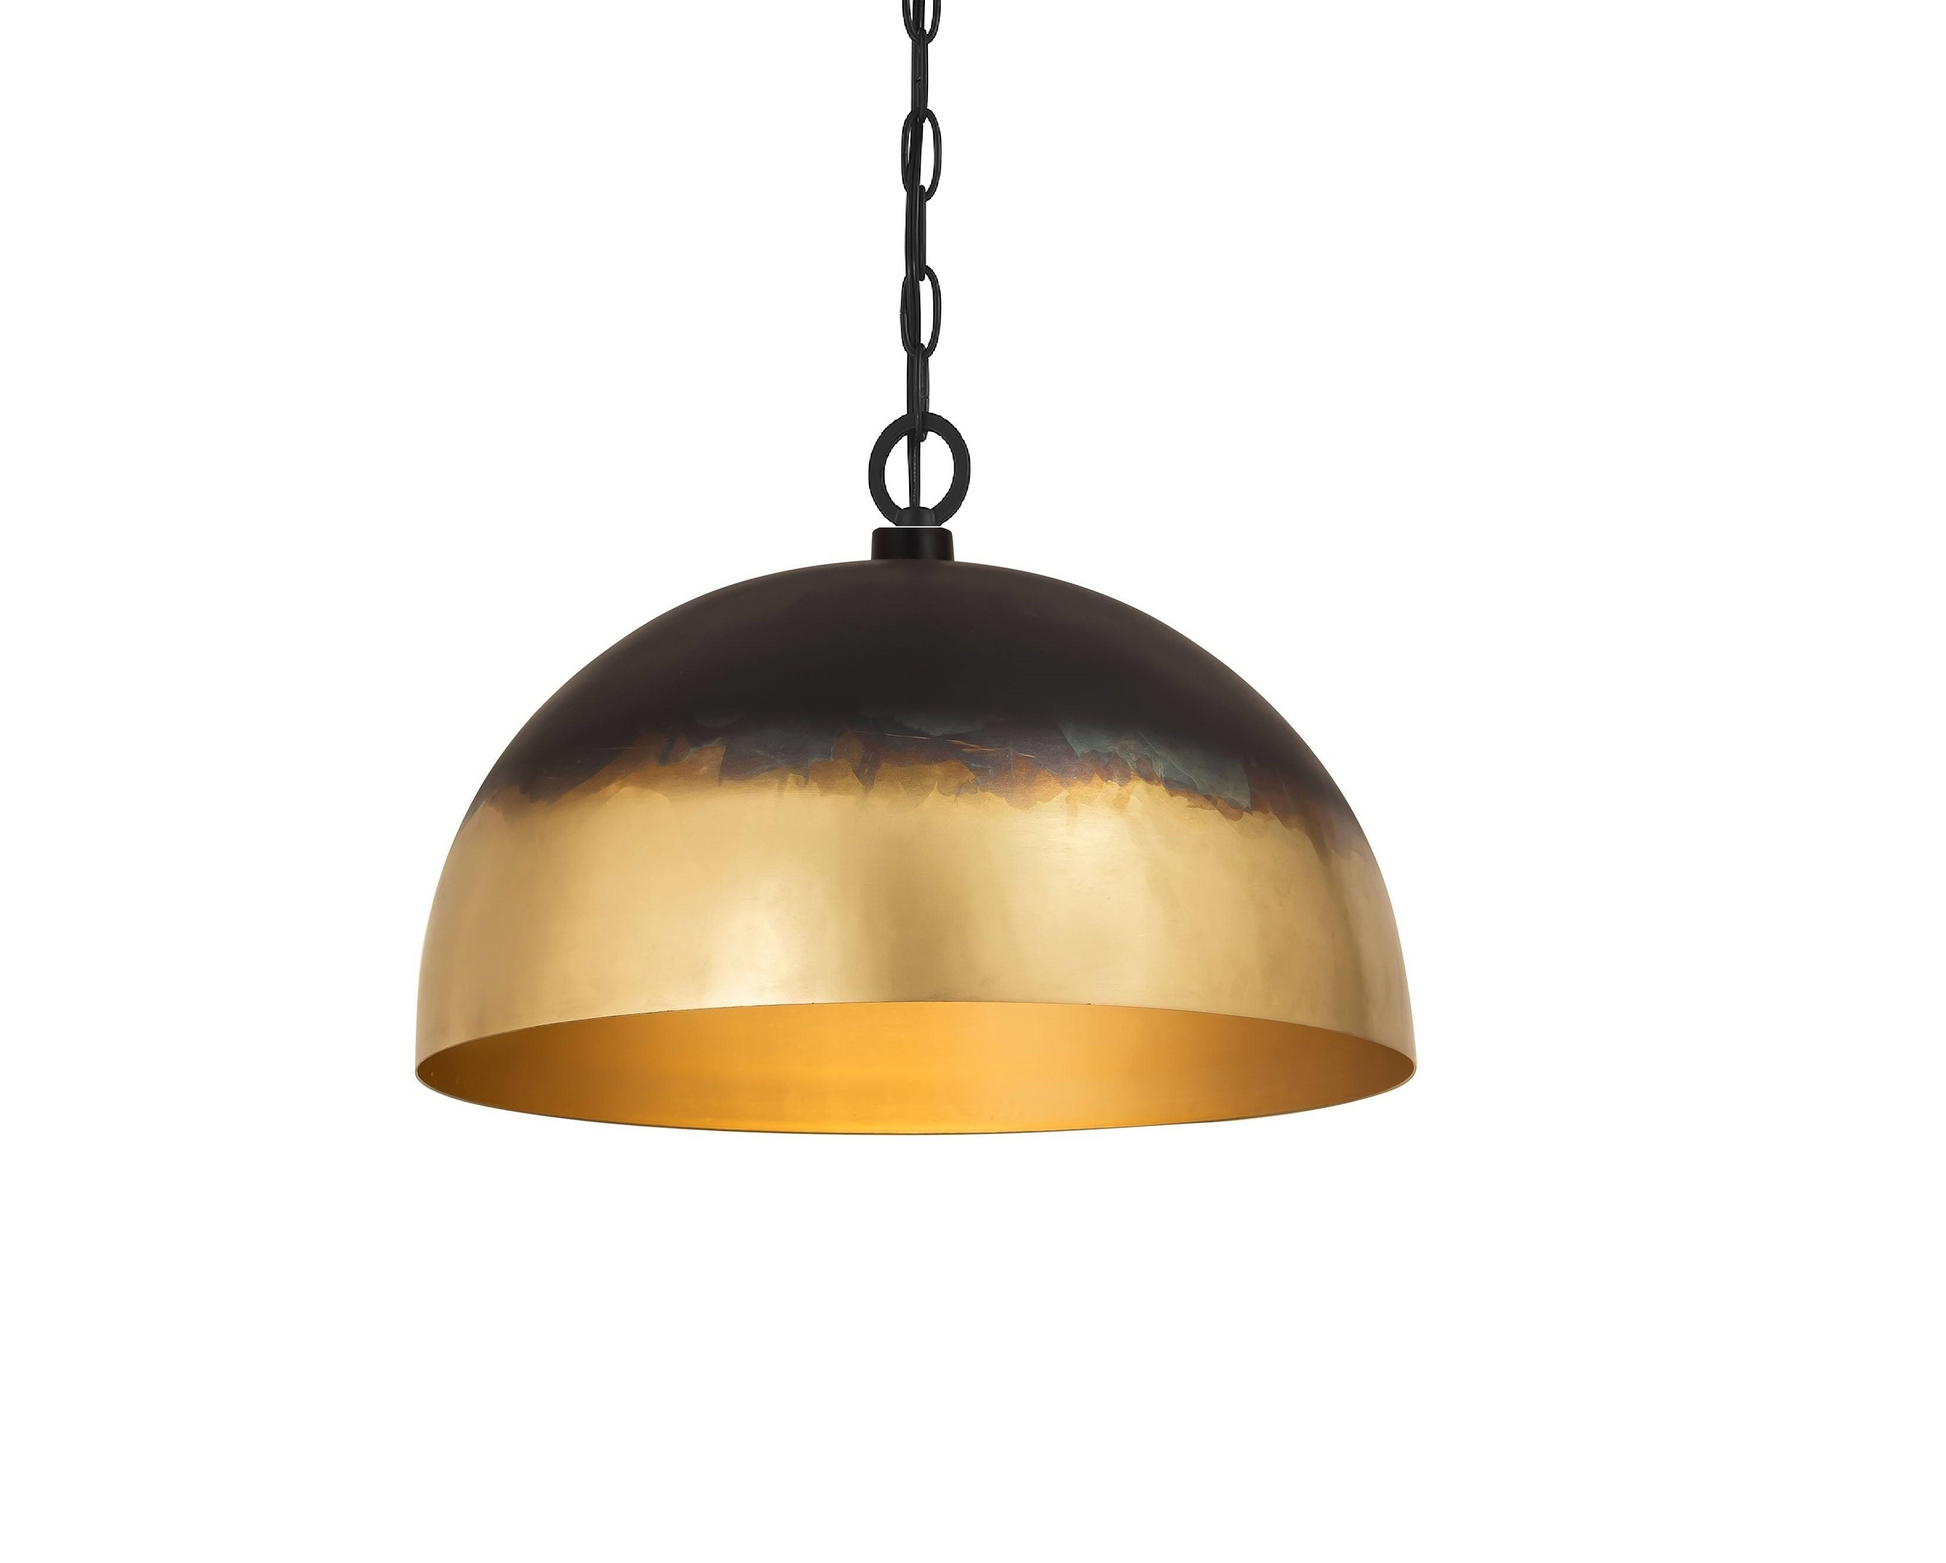 Brass Dome Pendant Ceiling  light , Antique Brass Dome Lamp kitchen light fixture - Afoscraft